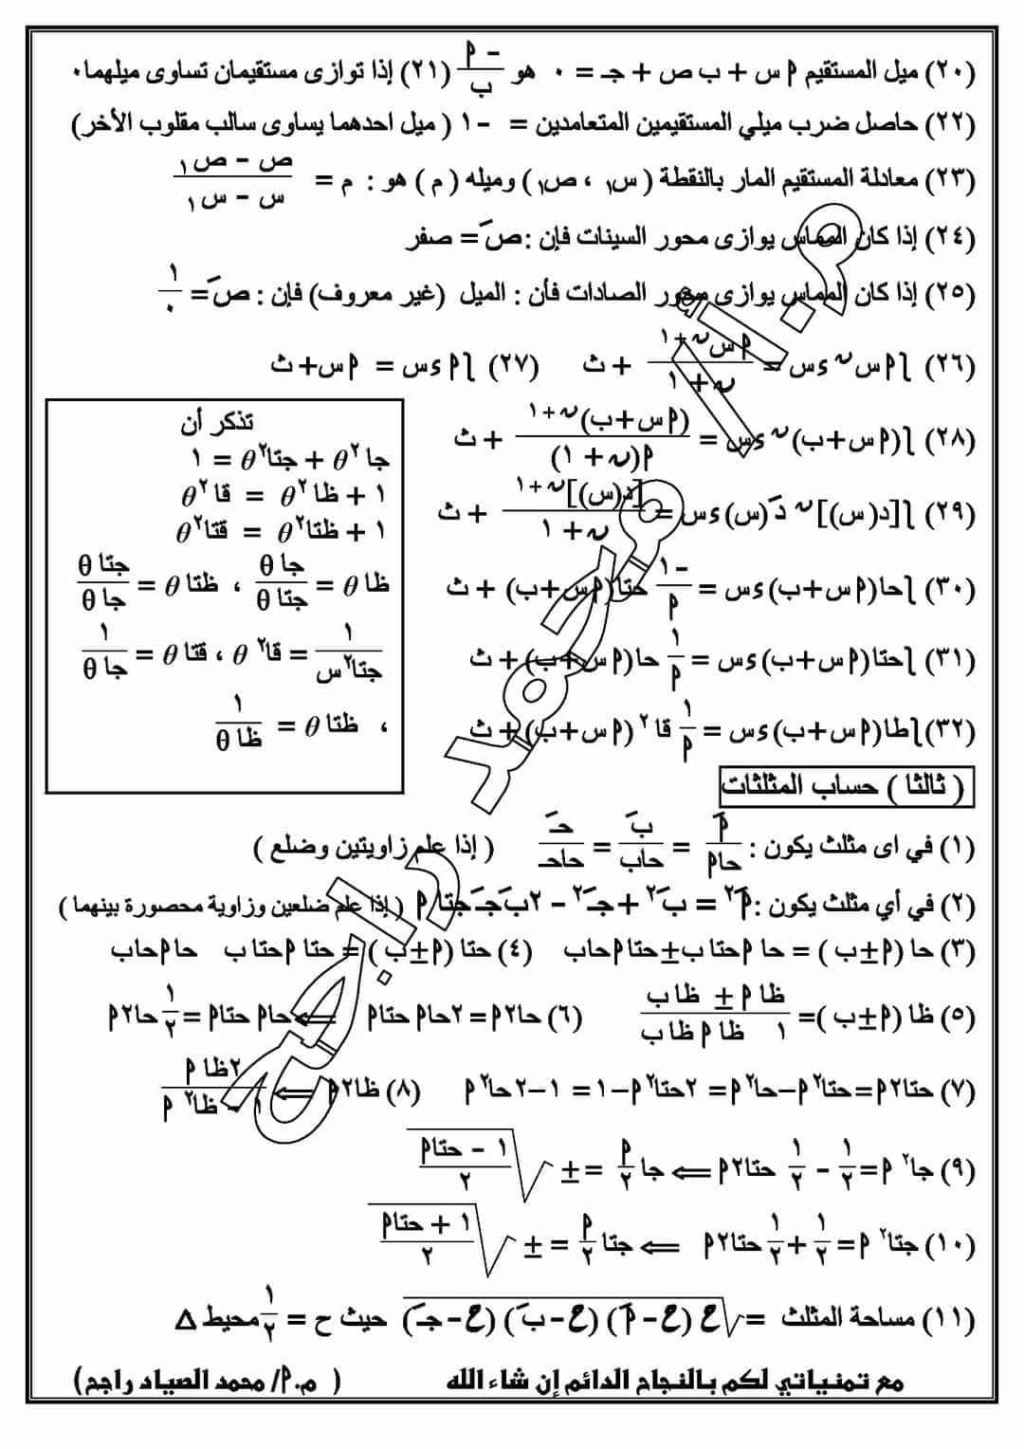 ملخص الرياضيات كامله للصف الثاني الثانوي ترم ثاني أ/ محمد راجح 4168